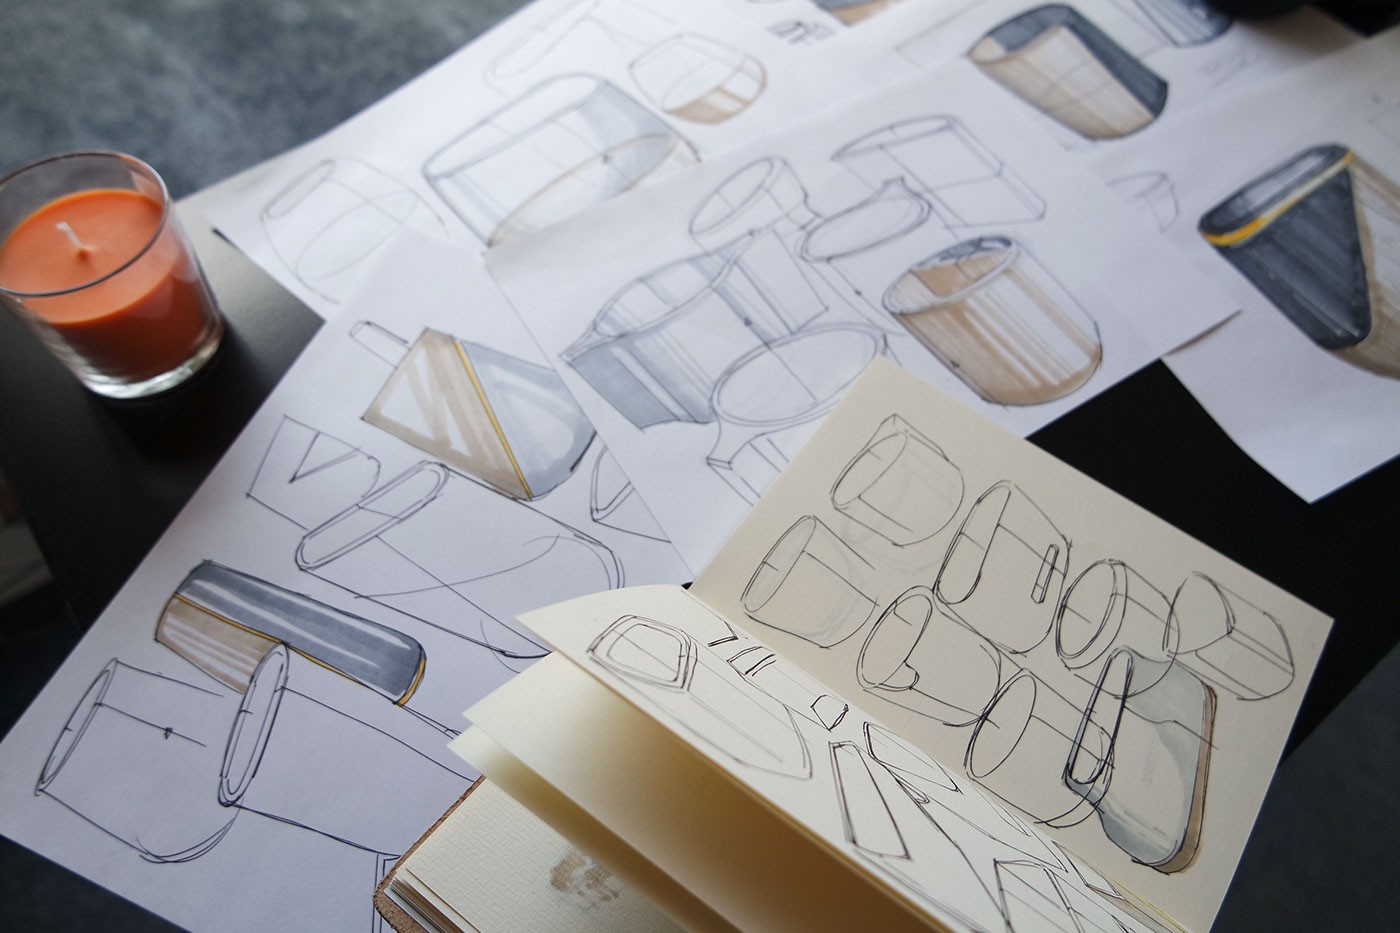 sketch sketches sketchbook industrial design  product design  Copic pen paper sketchbookpro